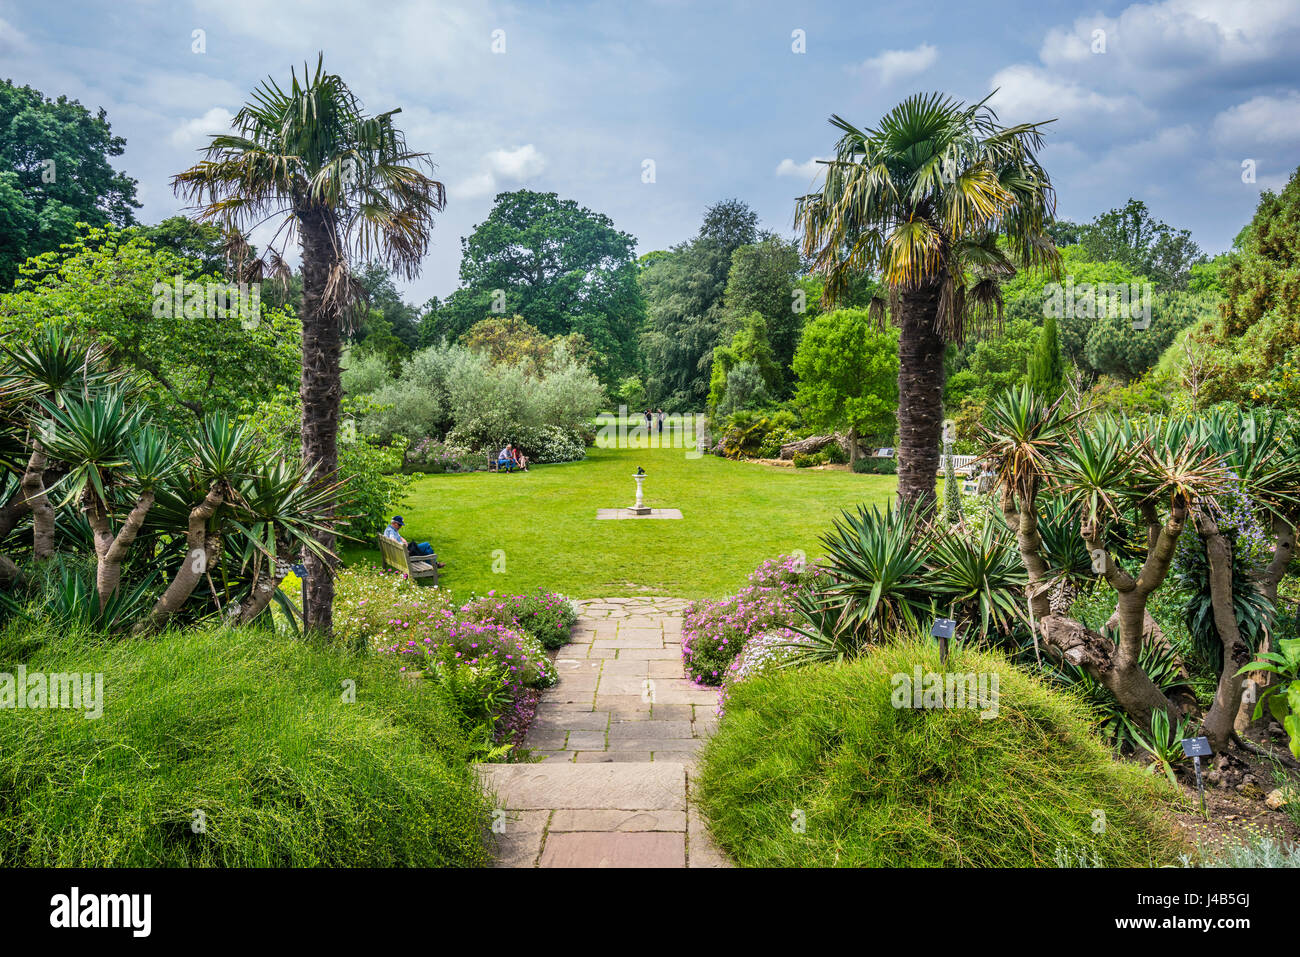 Royaume-uni, Angleterre, Kew Gardens dans le London Borough of Richmond upon Thames, vue sur le jardin méditerranéen Banque D'Images